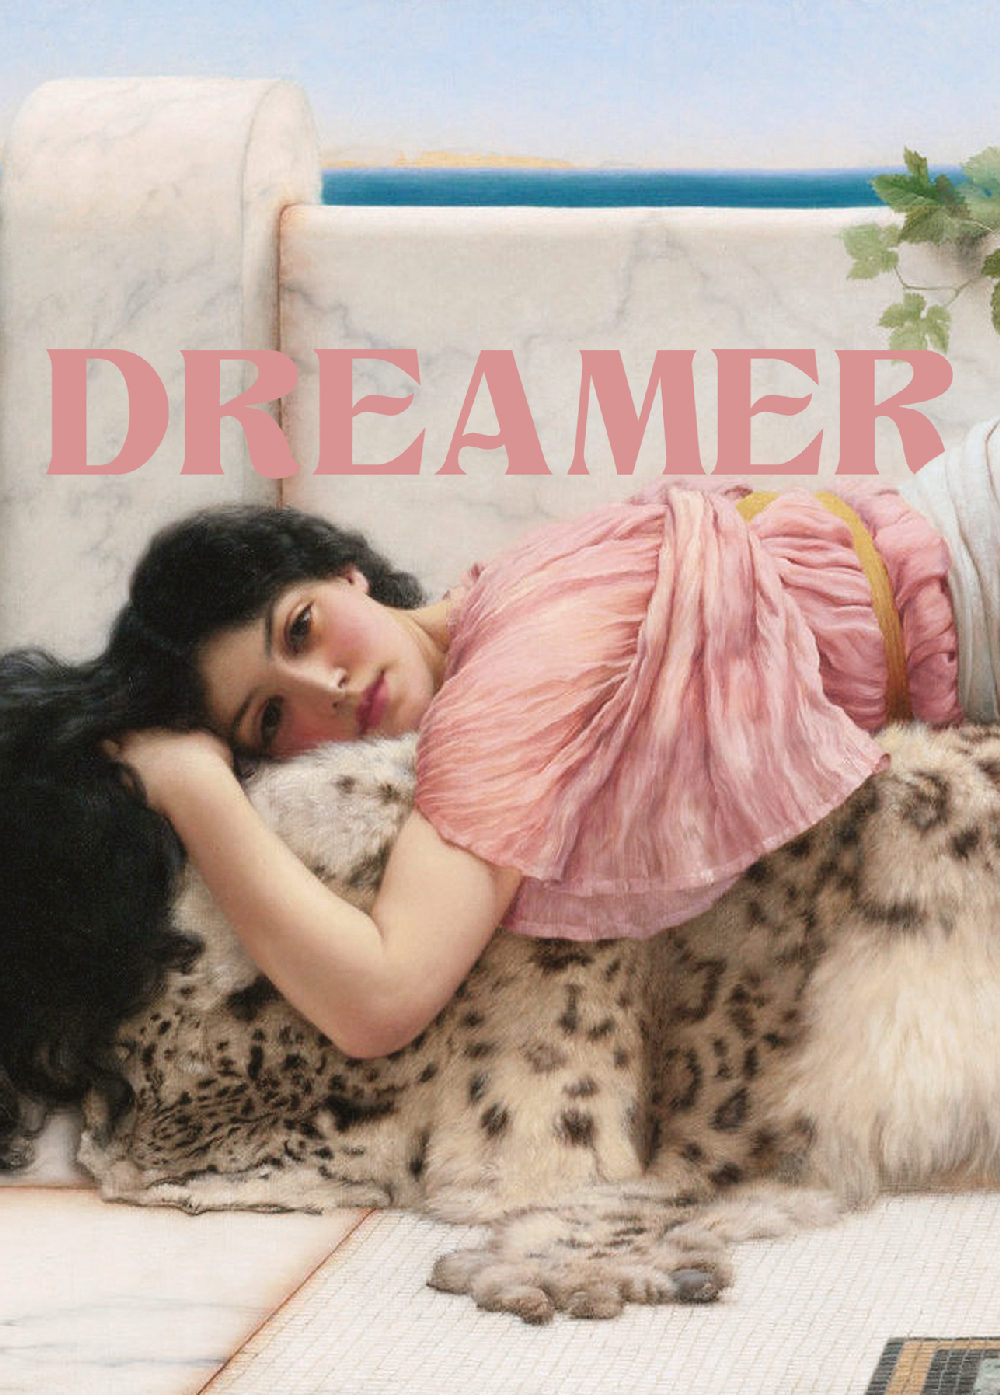 Dreamer - Post card